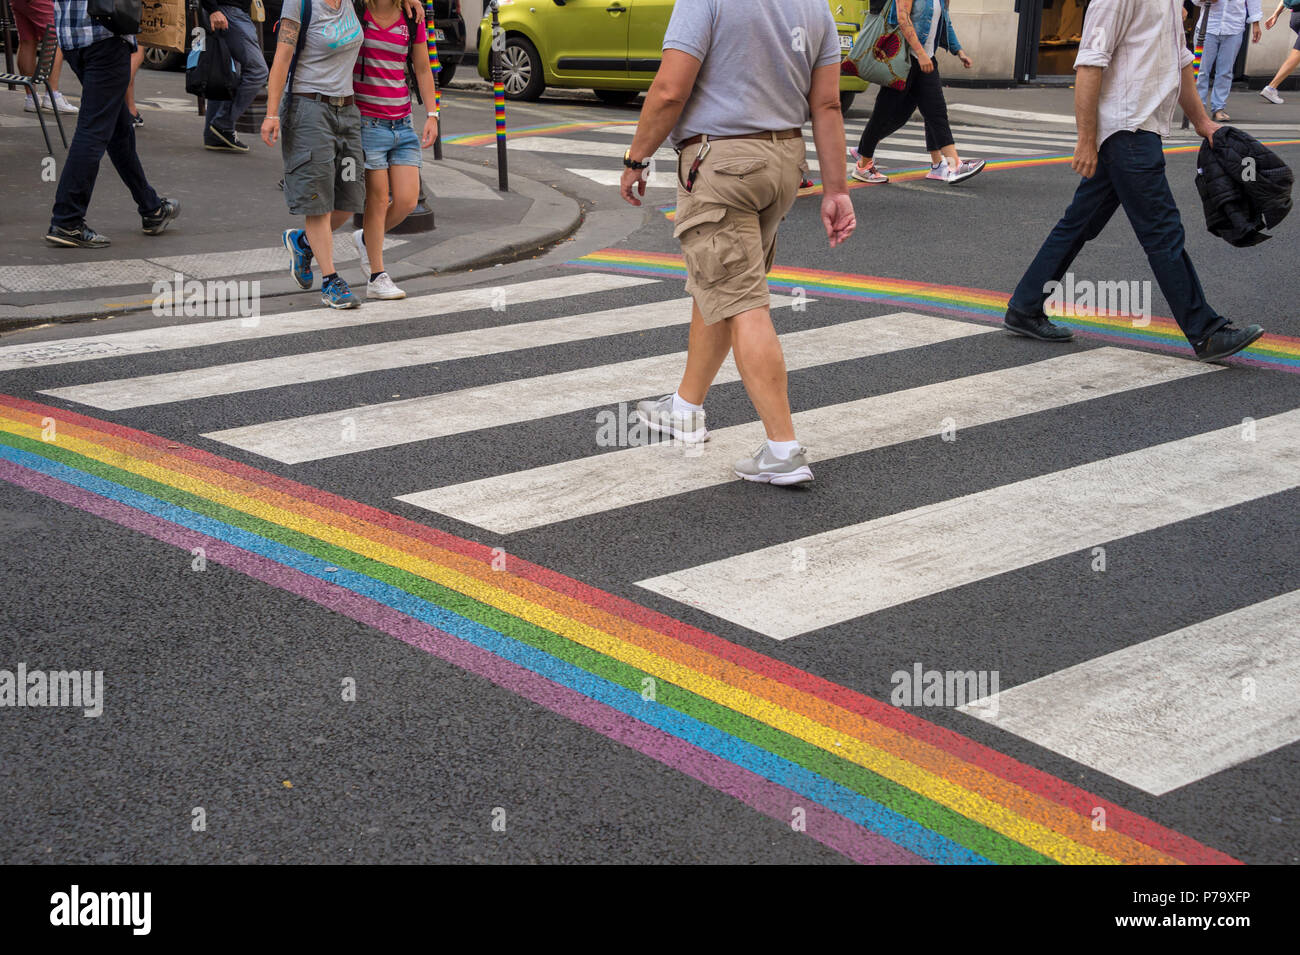 Paris, France - 24 June 2018: Gay pride flag crosswalk in Paris gay village with people crossing Stock Photo